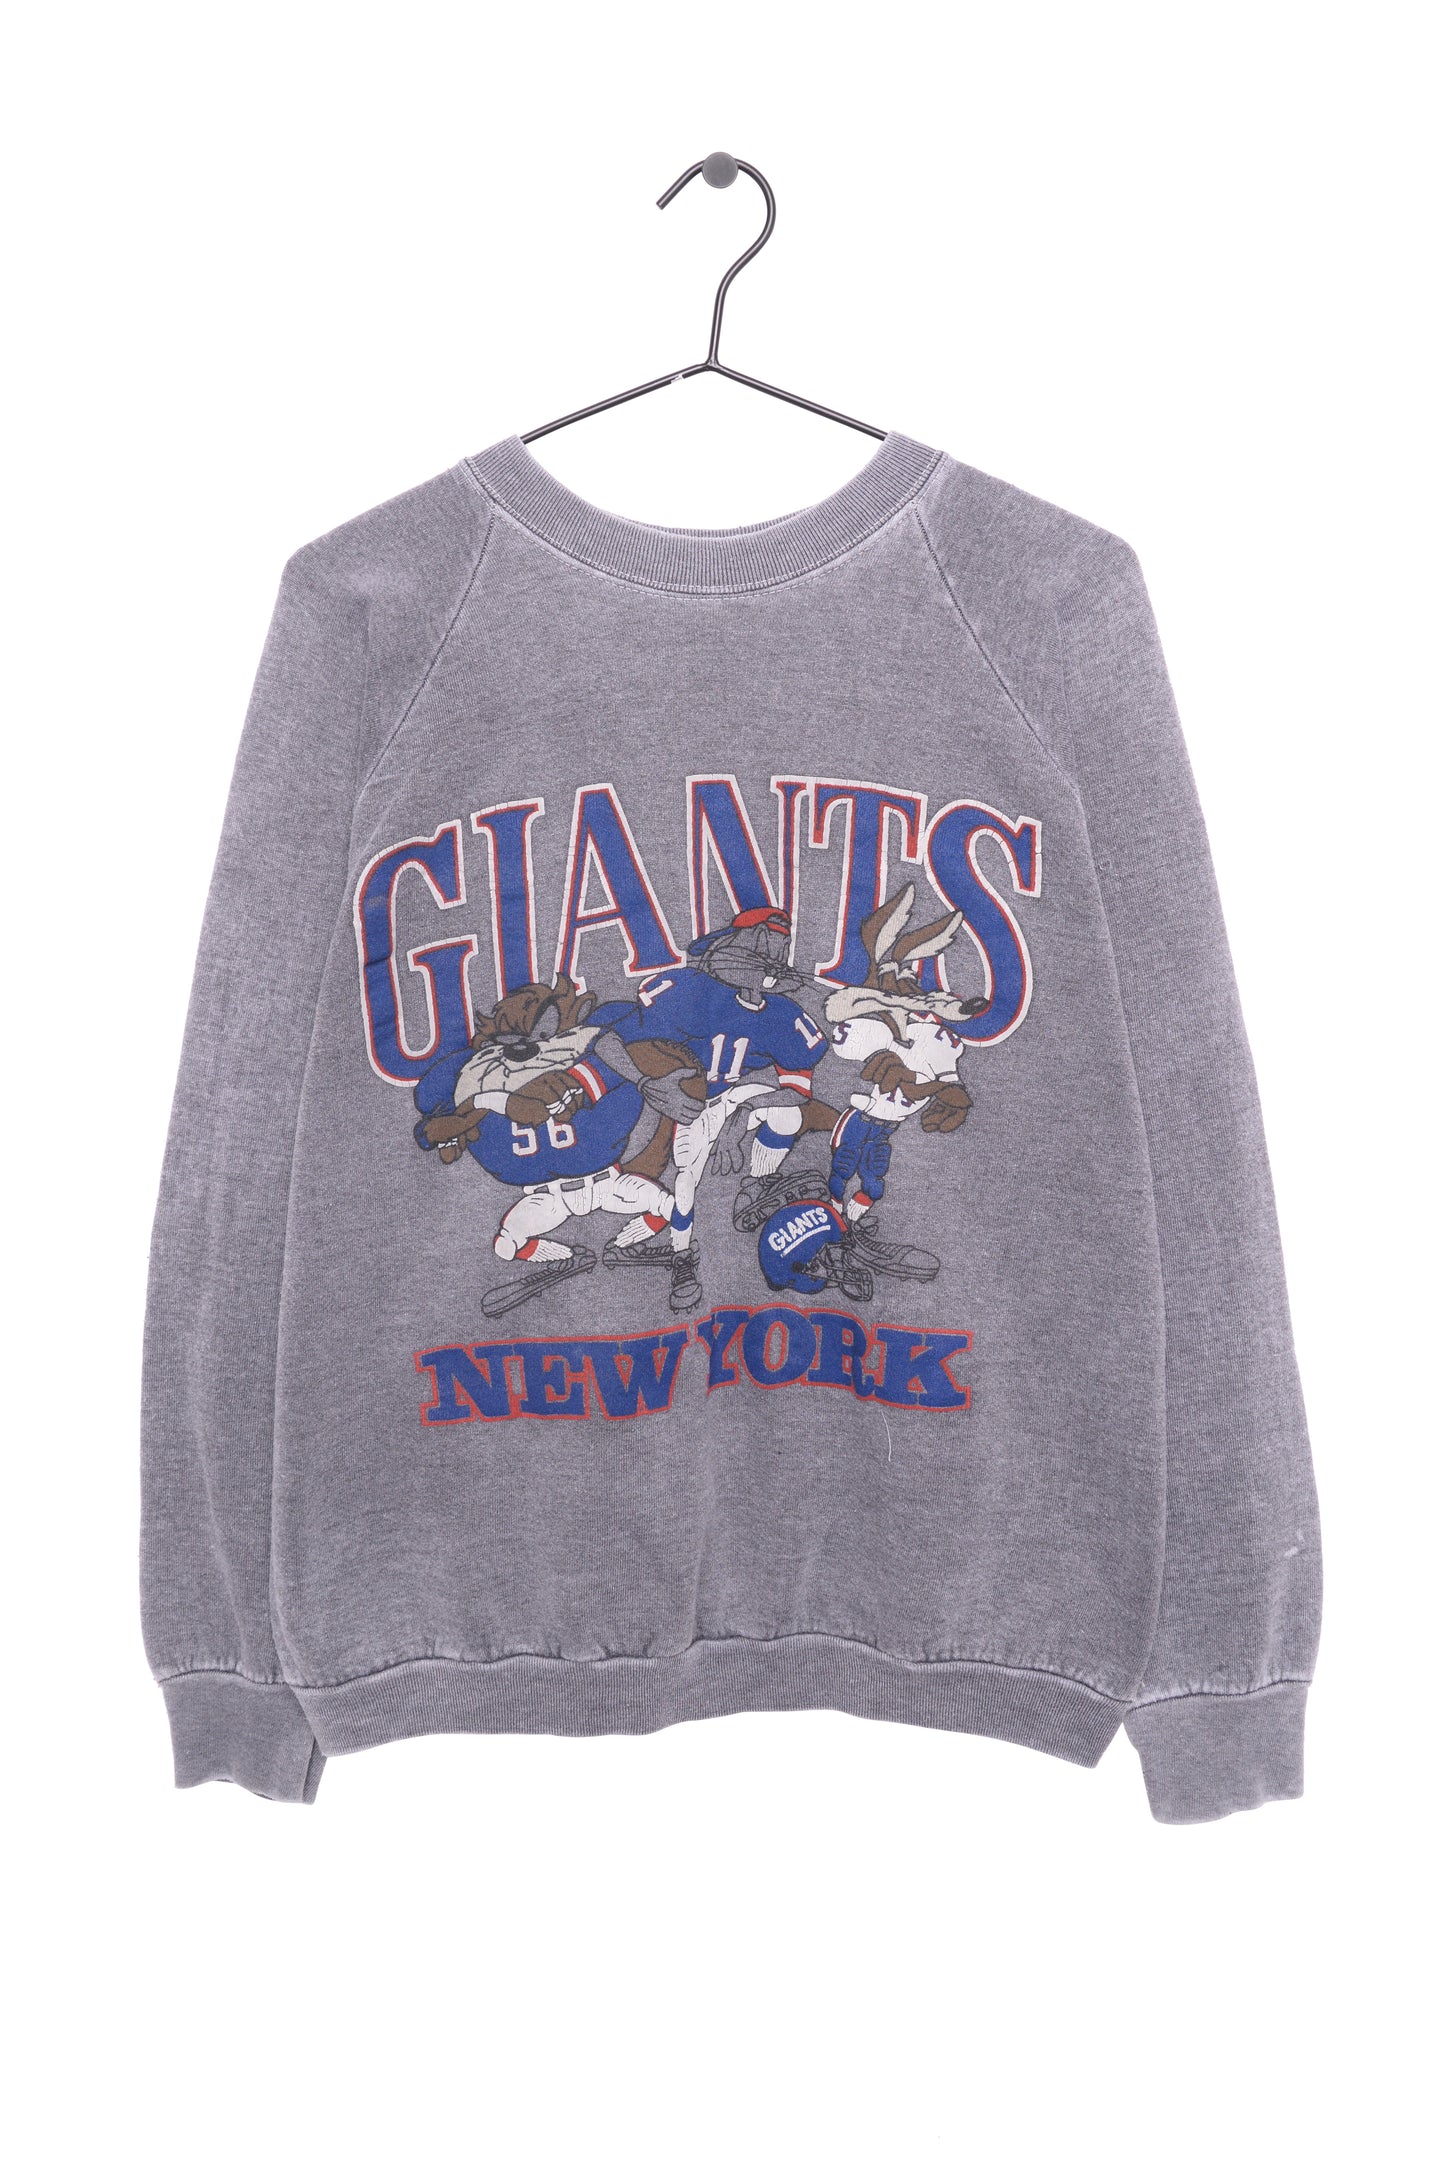 New York Giants Looney Tunes Sweatshirt USA